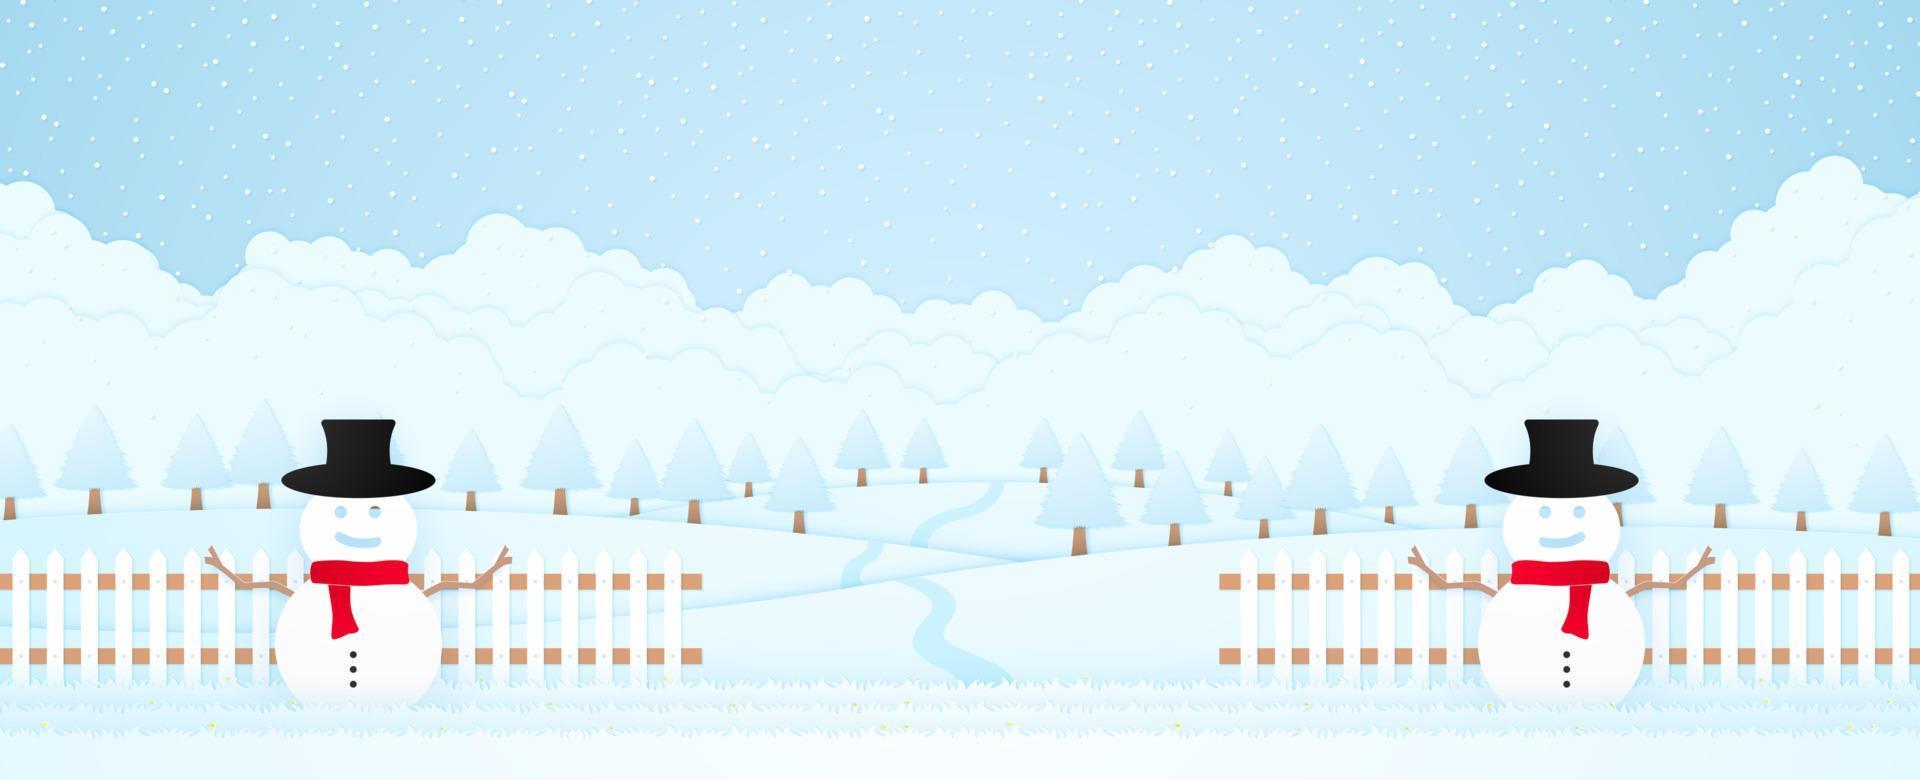 joyeux noël, bonhomme de neige de bienvenue sur l'herbe et la clôture derrière, paysage d'hiver, arbres sur la colline et chute de neige, carte d'invitation, style art papier vecteur